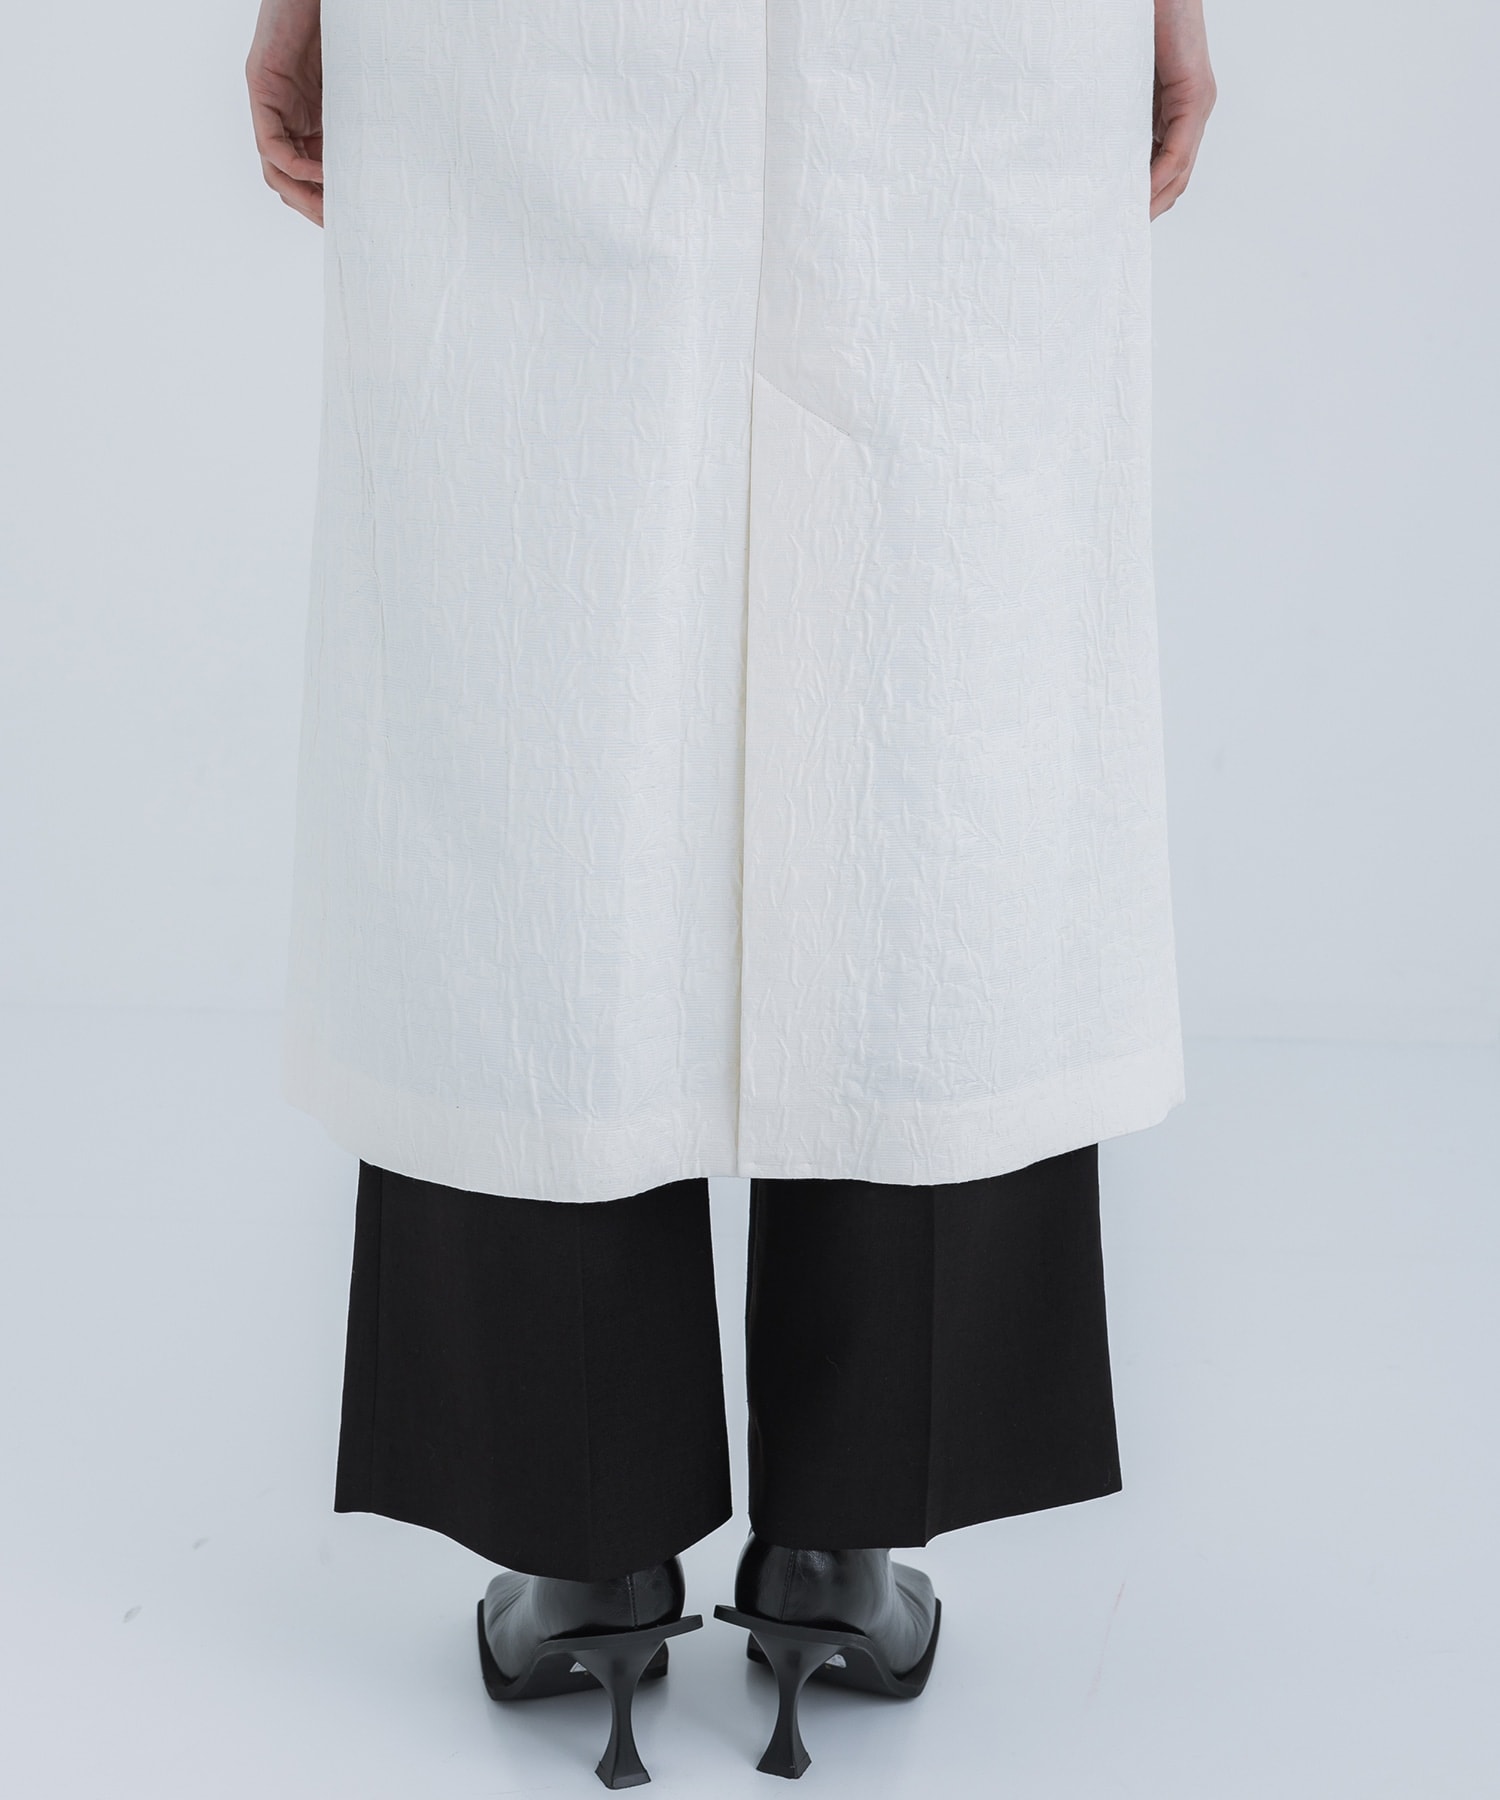 Unlevel Dyeing Sleeveless Jacket Mame Kurogouchi